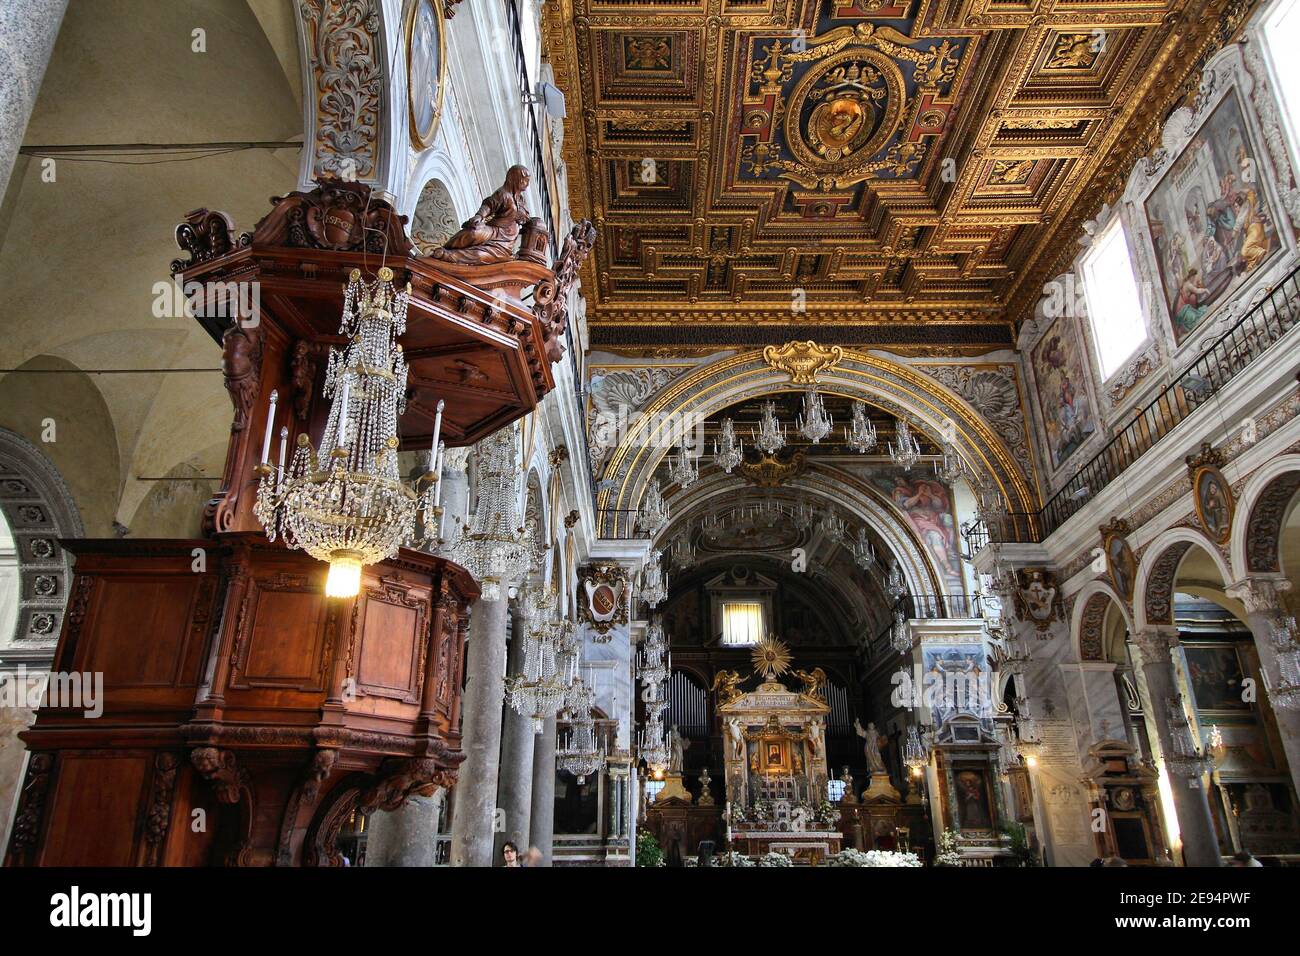 ROMA, ITALIA - 8 APRILE 2012: Interno della Basilica di Santa Maria in Aracoeli a Roma. La famosa chiesa romanica risale al 12 ° secolo. Foto Stock